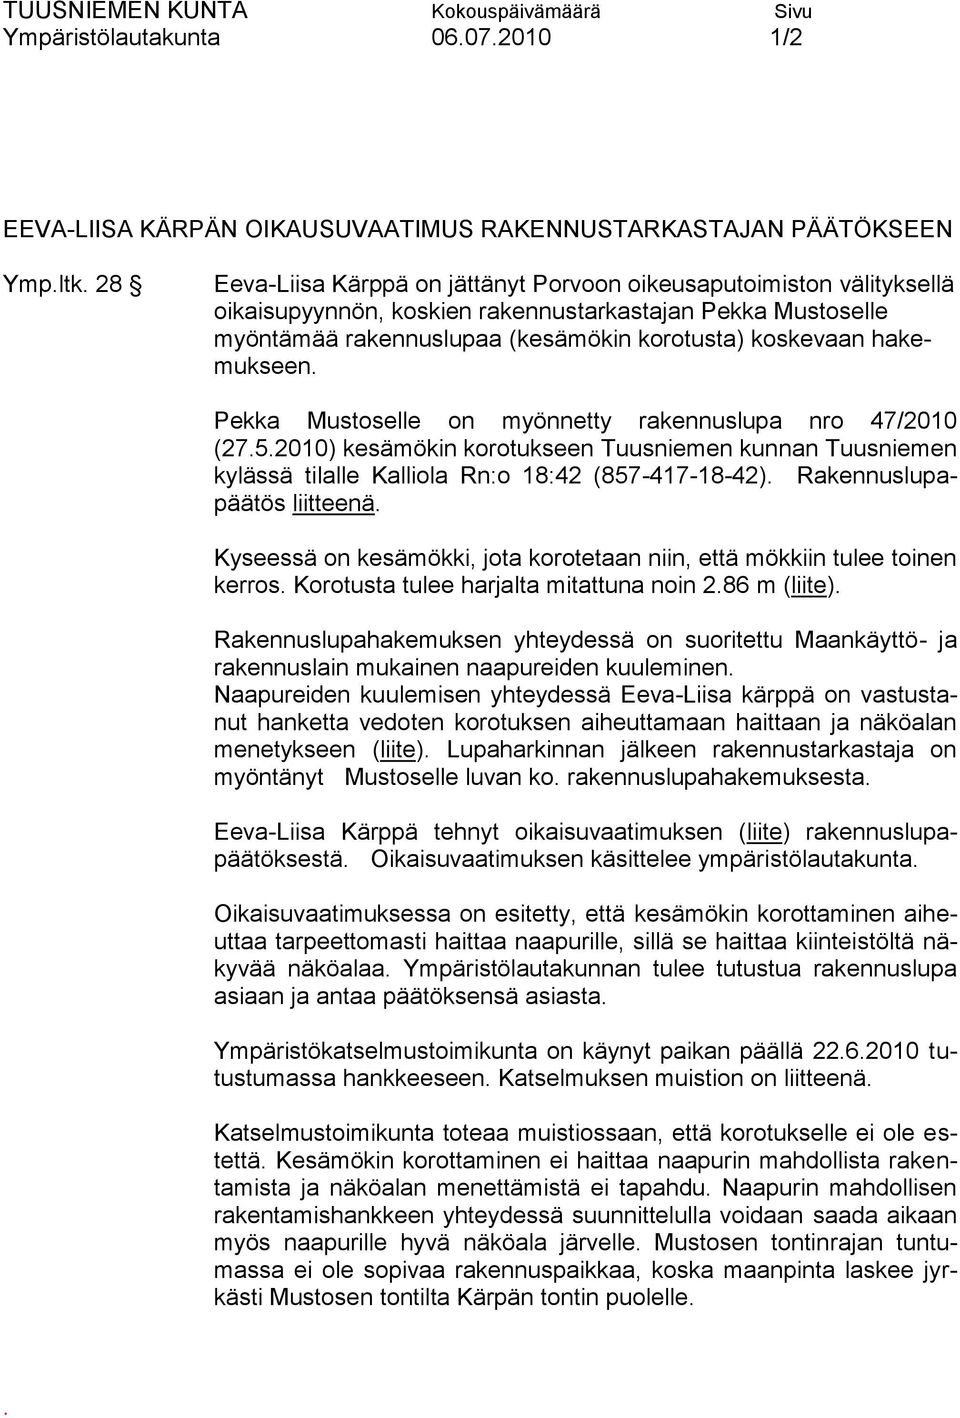 hakemukseen. Pekka Mustoselle on myönnetty rakennuslupa nro 47/2010 (27.5.2010) kesämökin korotukseen Tuusniemen kunnan Tuusniemen kylässä tilalle Kalliola Rn:o 18:42 (857-417-18-42).